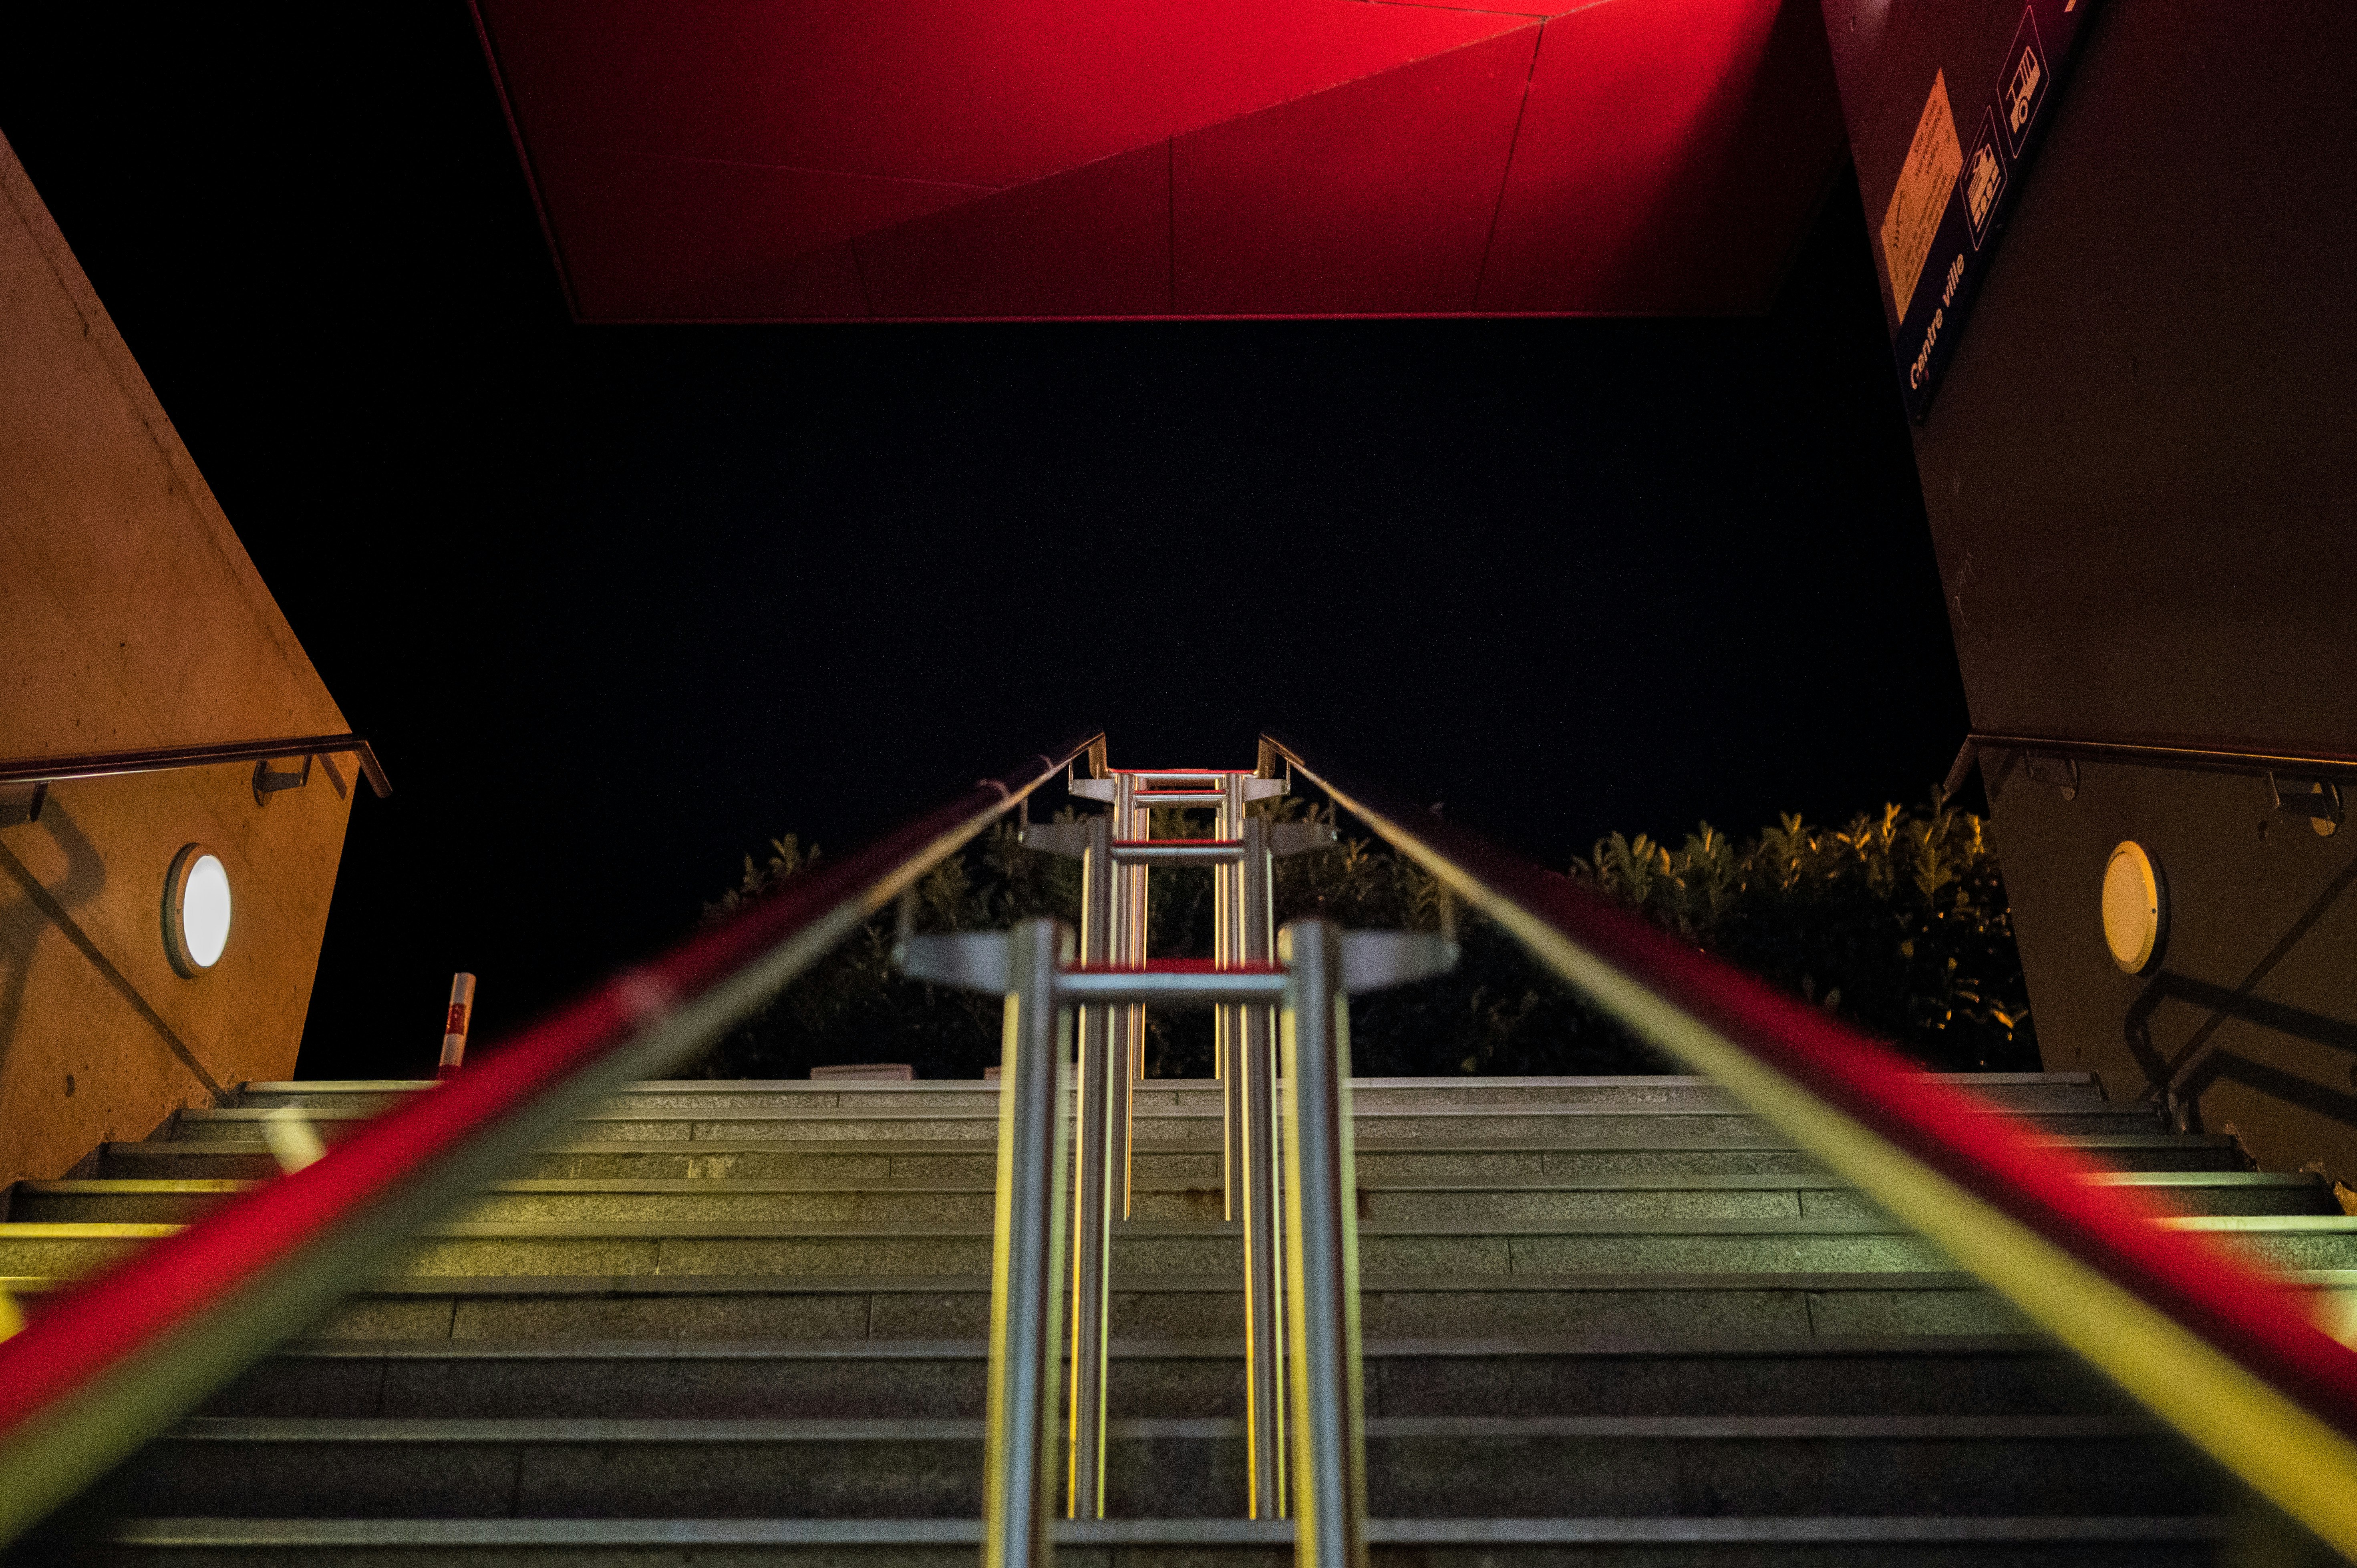 Stairway to the dark night